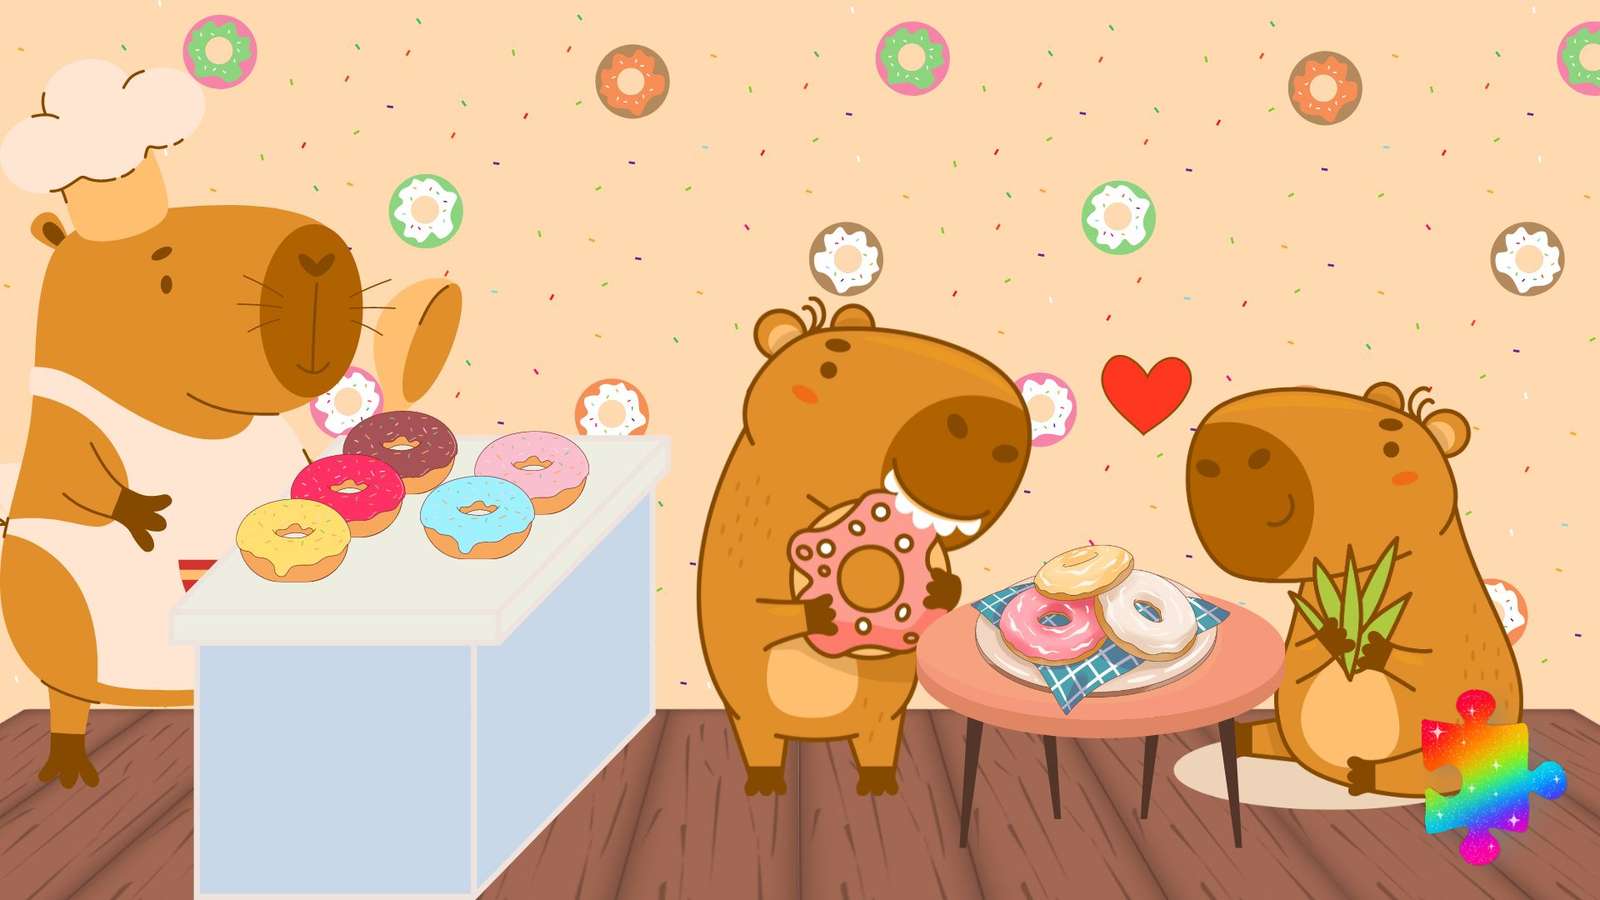 Capybara Donut Shop Puzzlespiel online